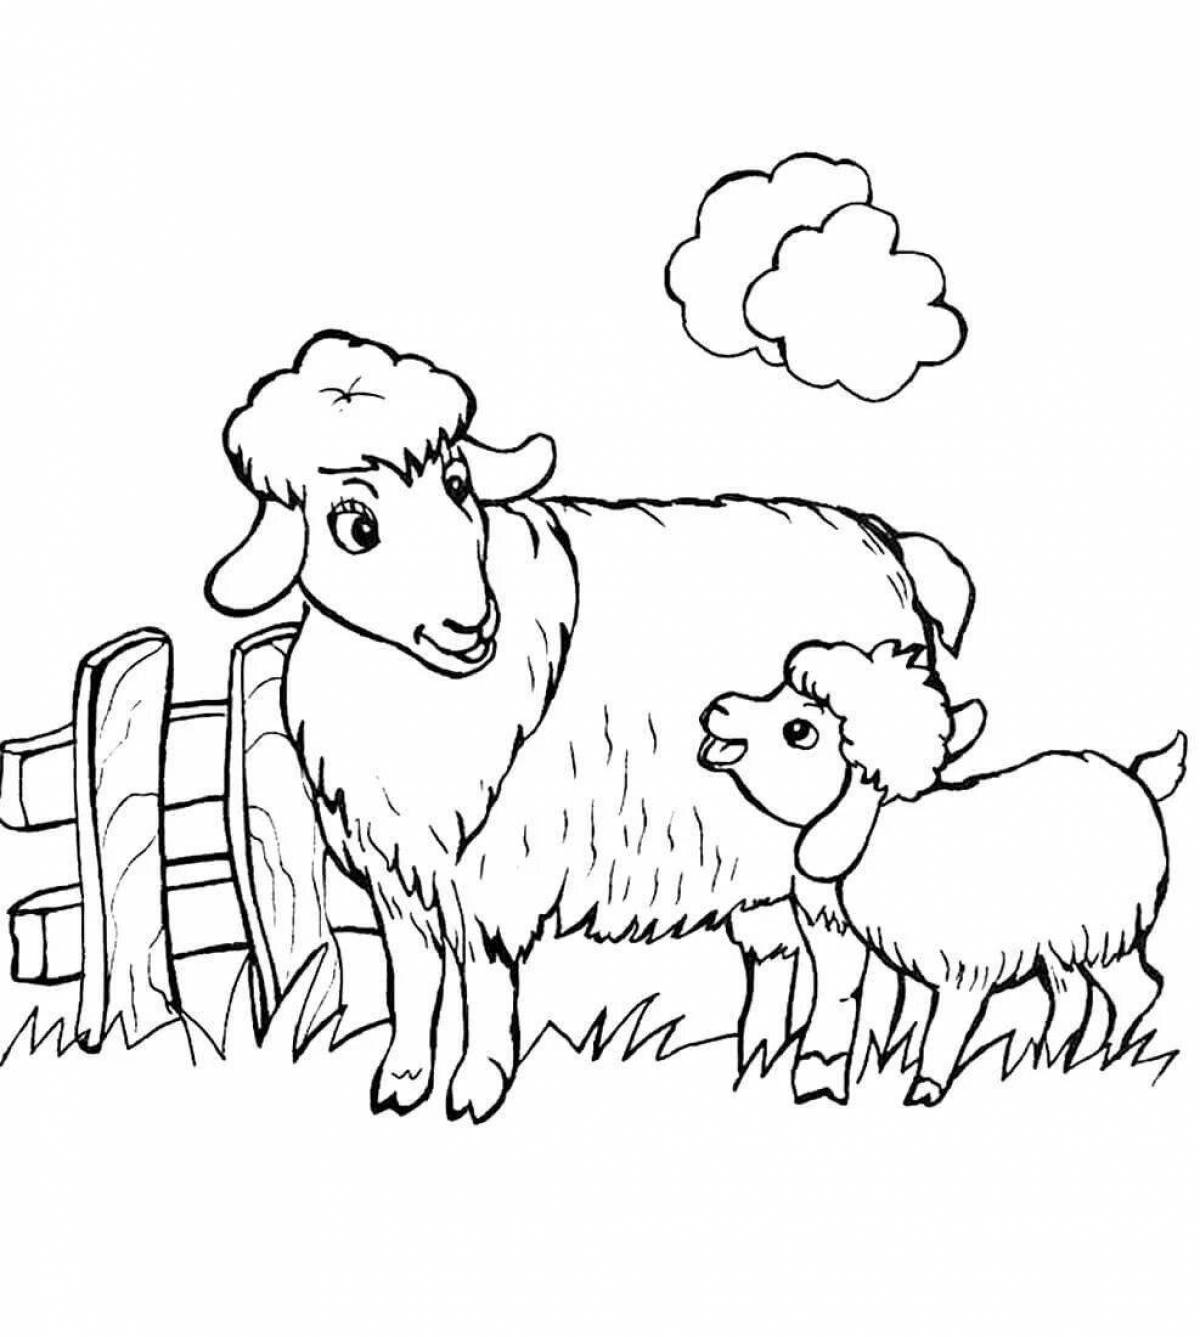 Cute lamb coloring book for kids